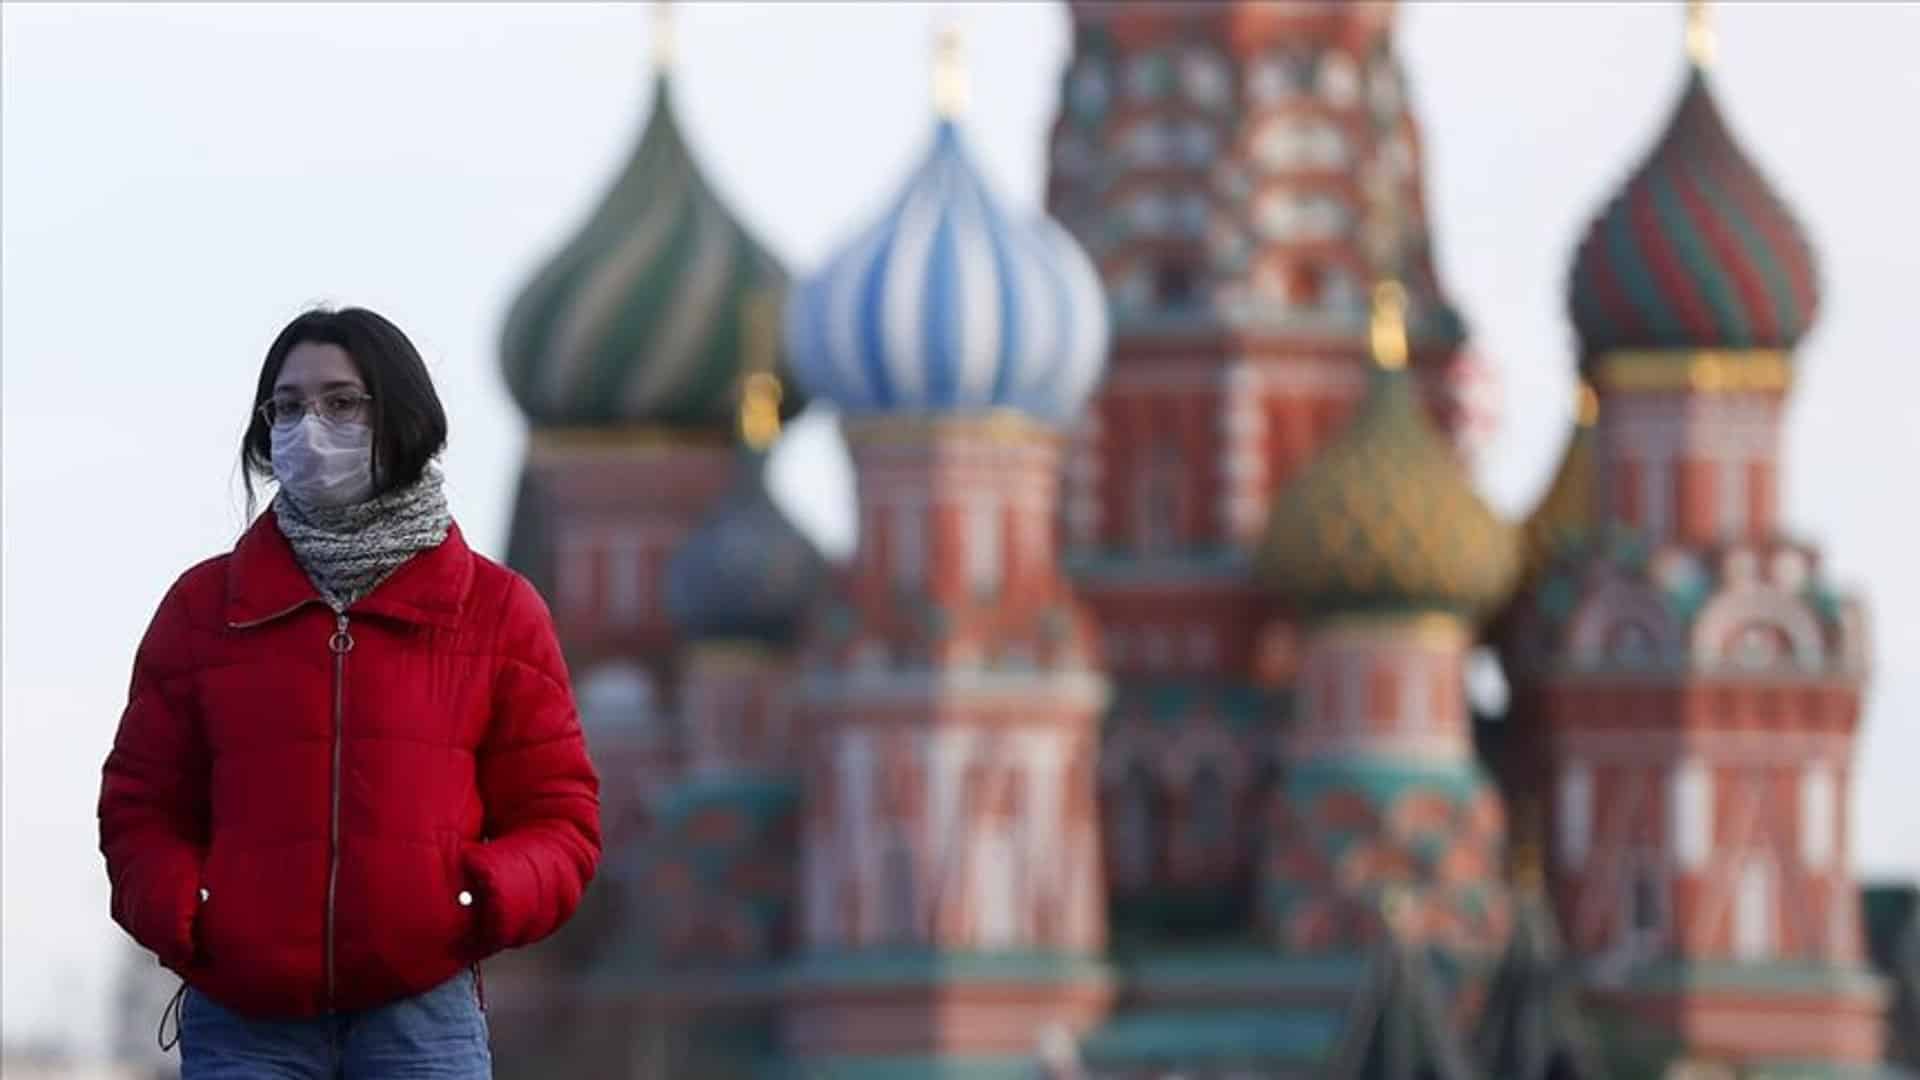 Rusya'da Vaka Sayısı Hızla Artmaya Devam Ediyor!